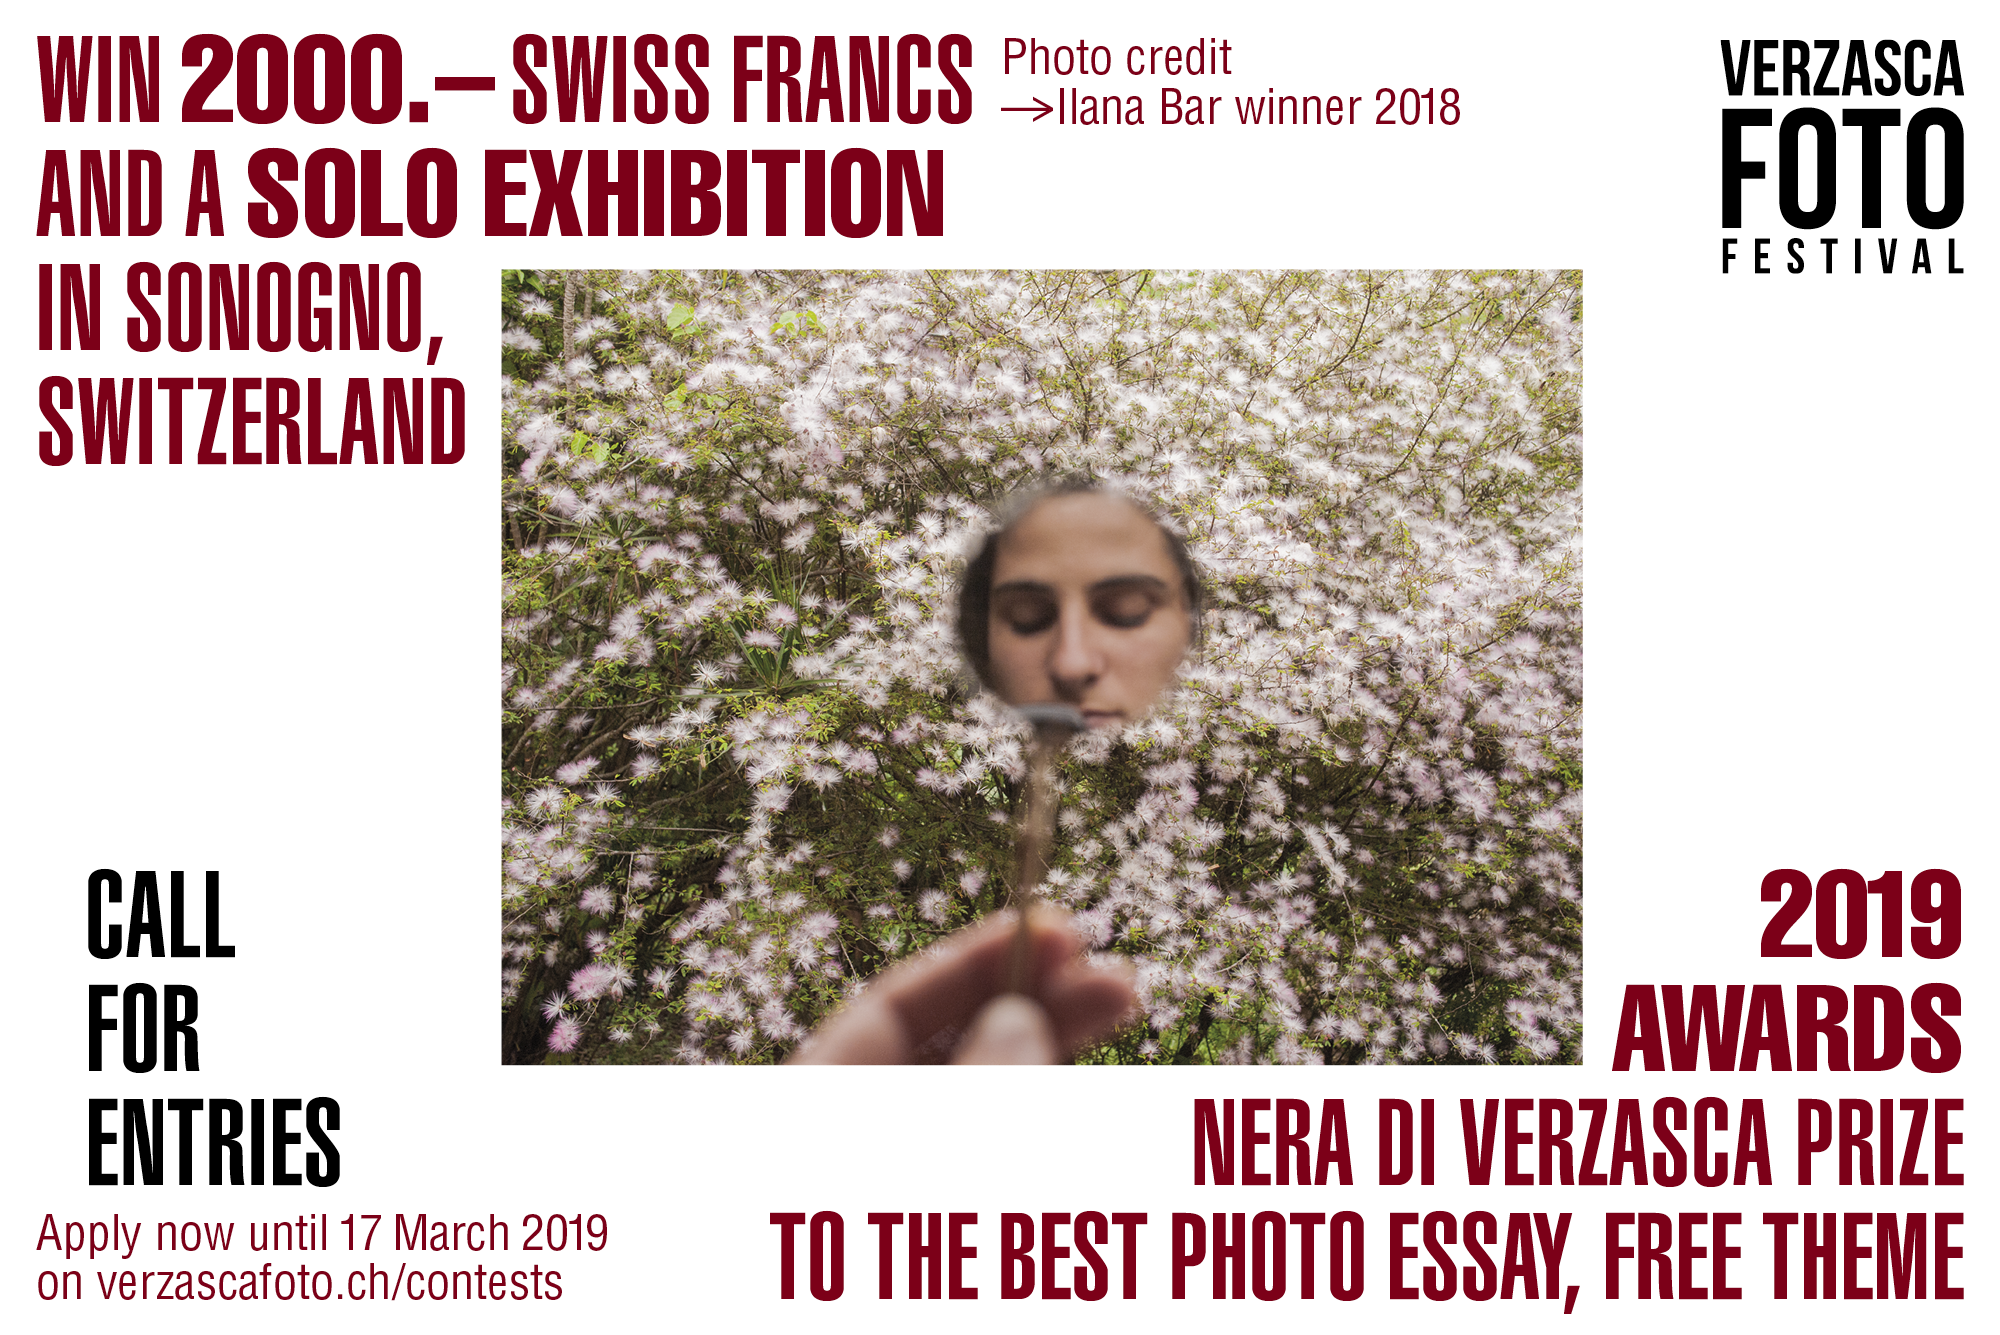 Verzasca Foto Festival Awards -2019 NERA PRIZE